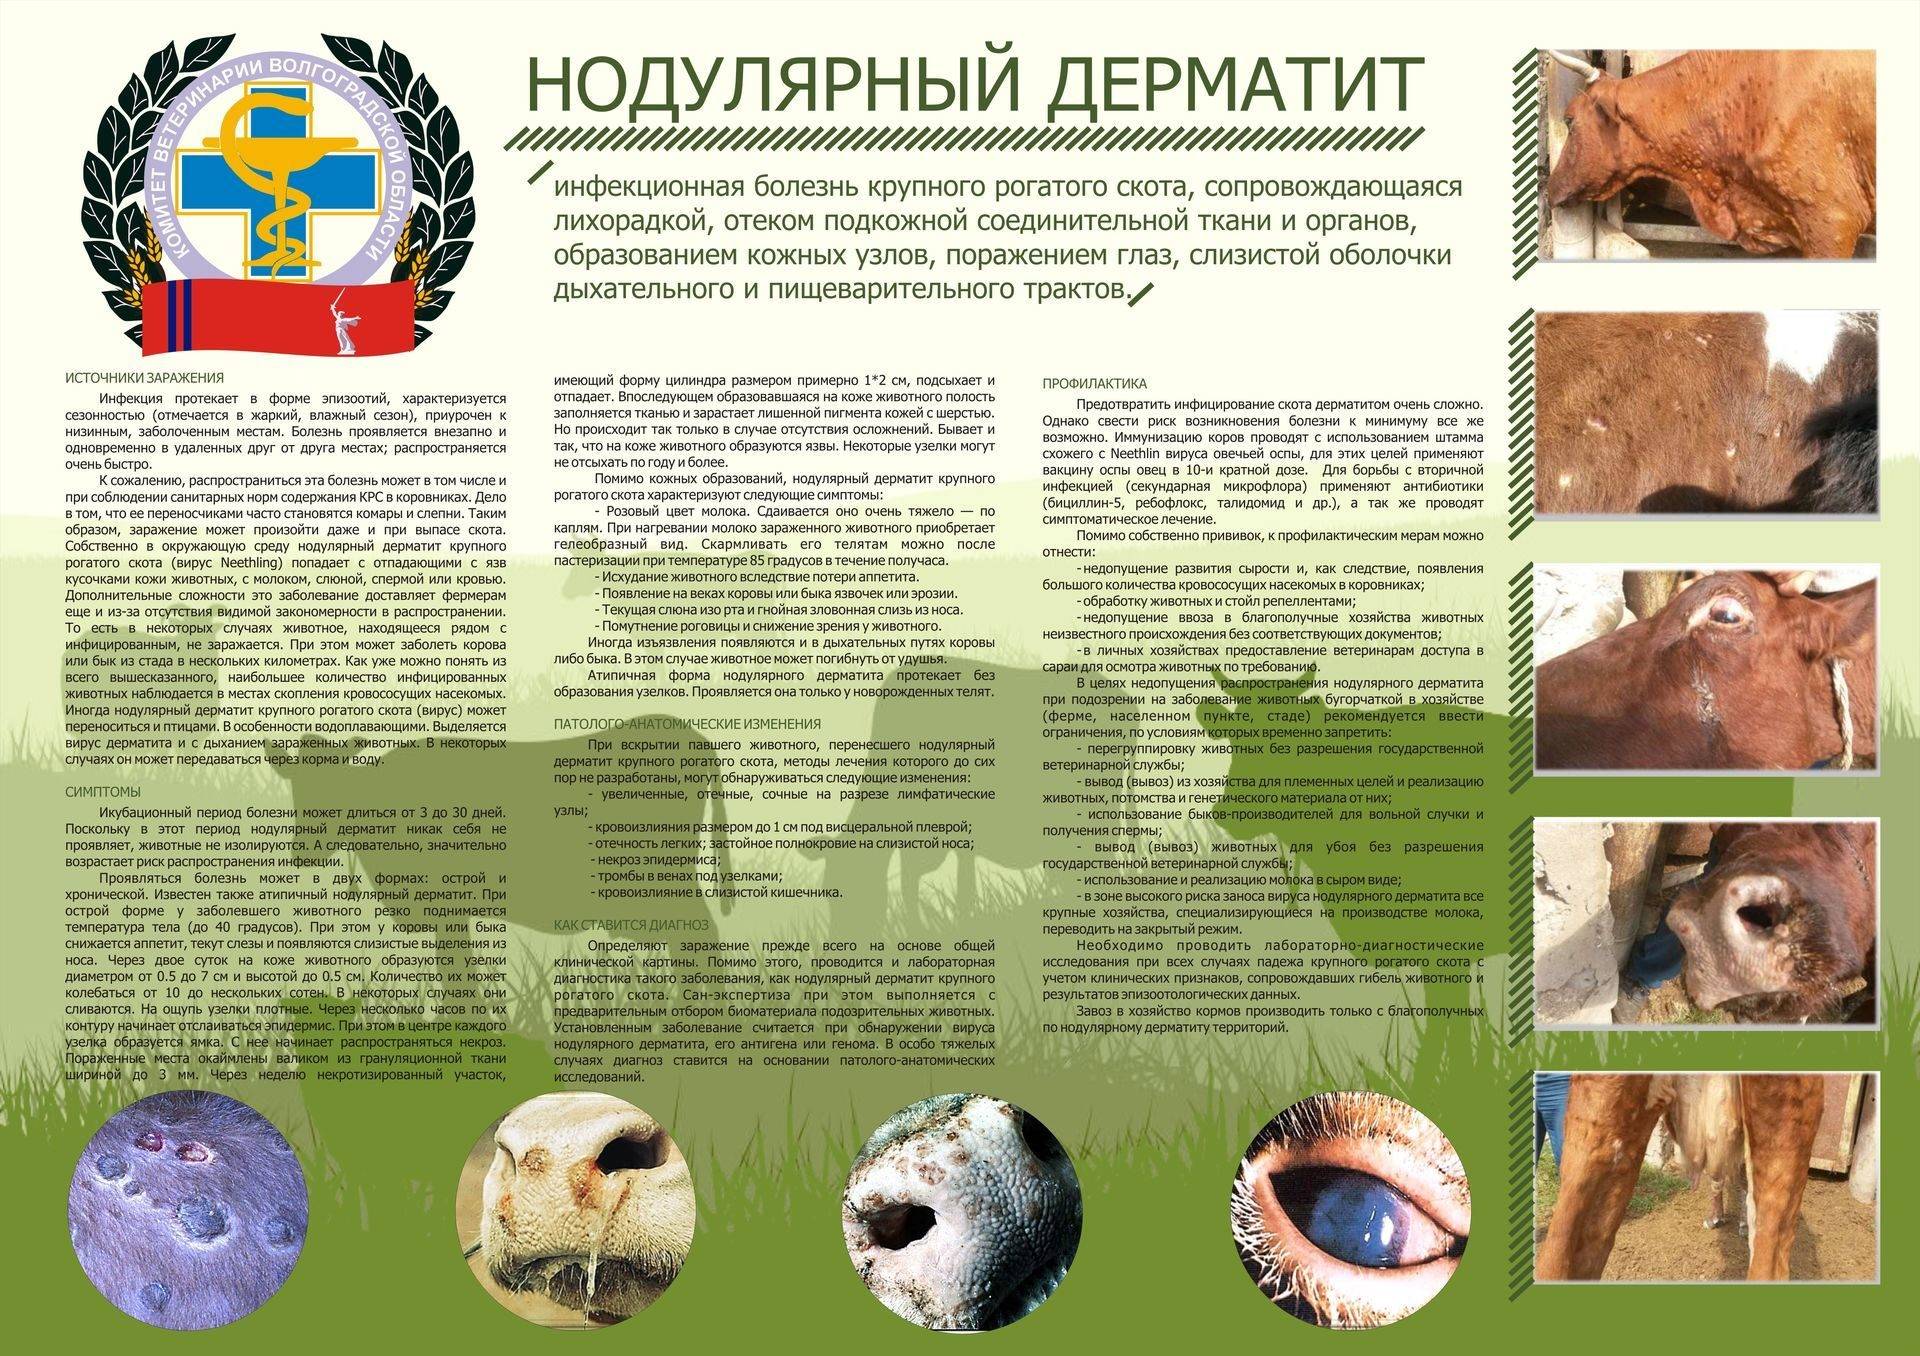 Нодулярный дерматит крупного рогатого скота: фото лечение, случаи у человека